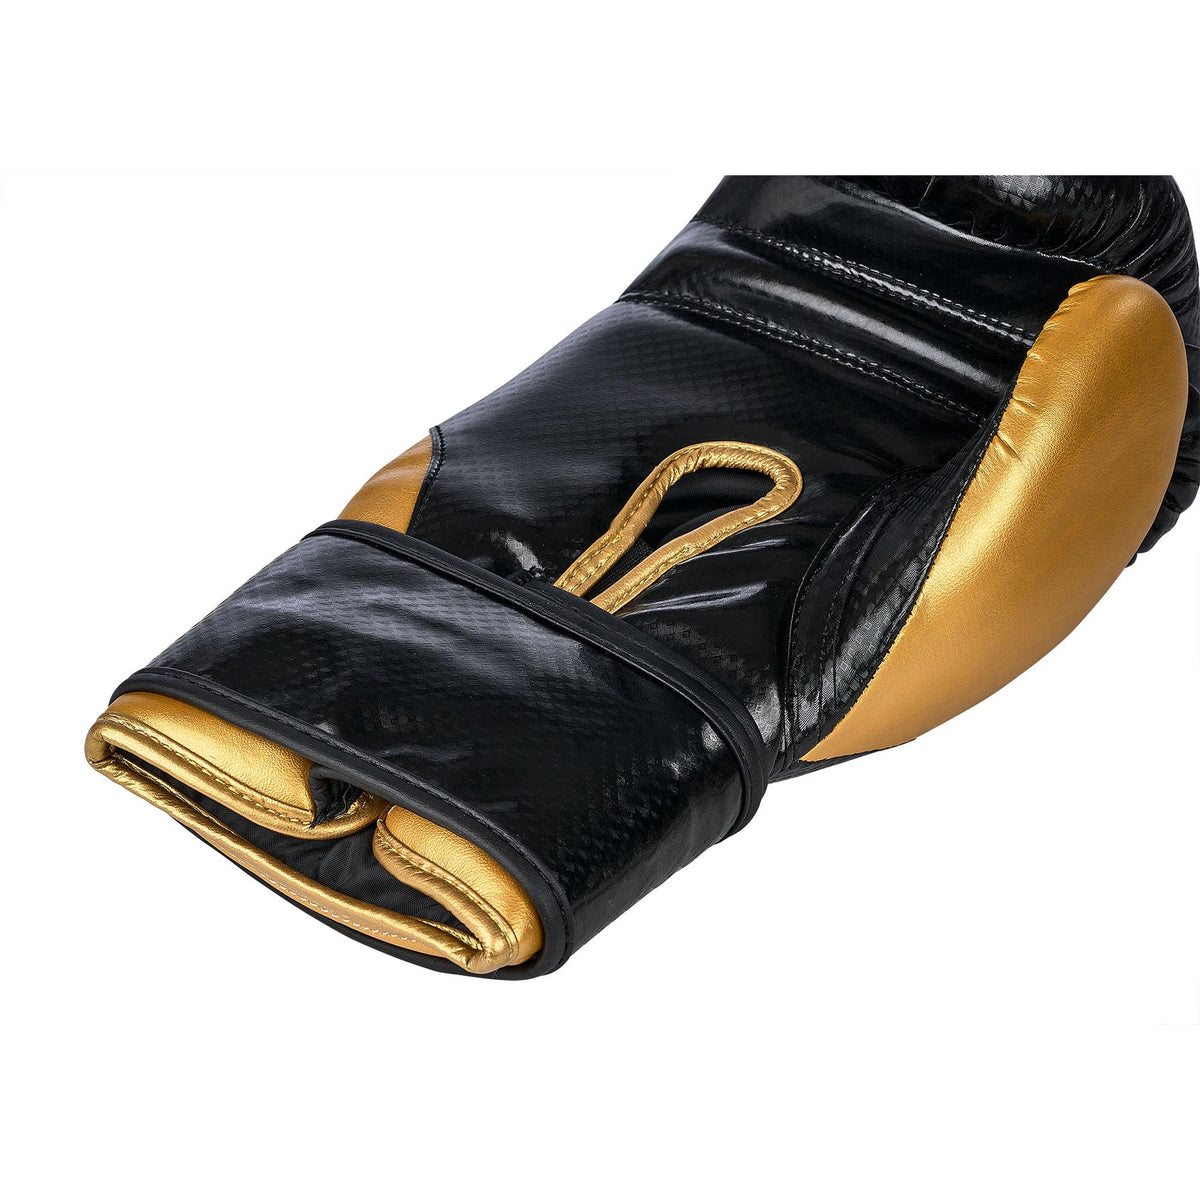 Klettverschluss Innenseite schwarze goldene Boxhandschuhe aus PU-Leder in einer größeren Aufnahmen, auch die Innenseite der Boxhandschuhe sind sichtbar